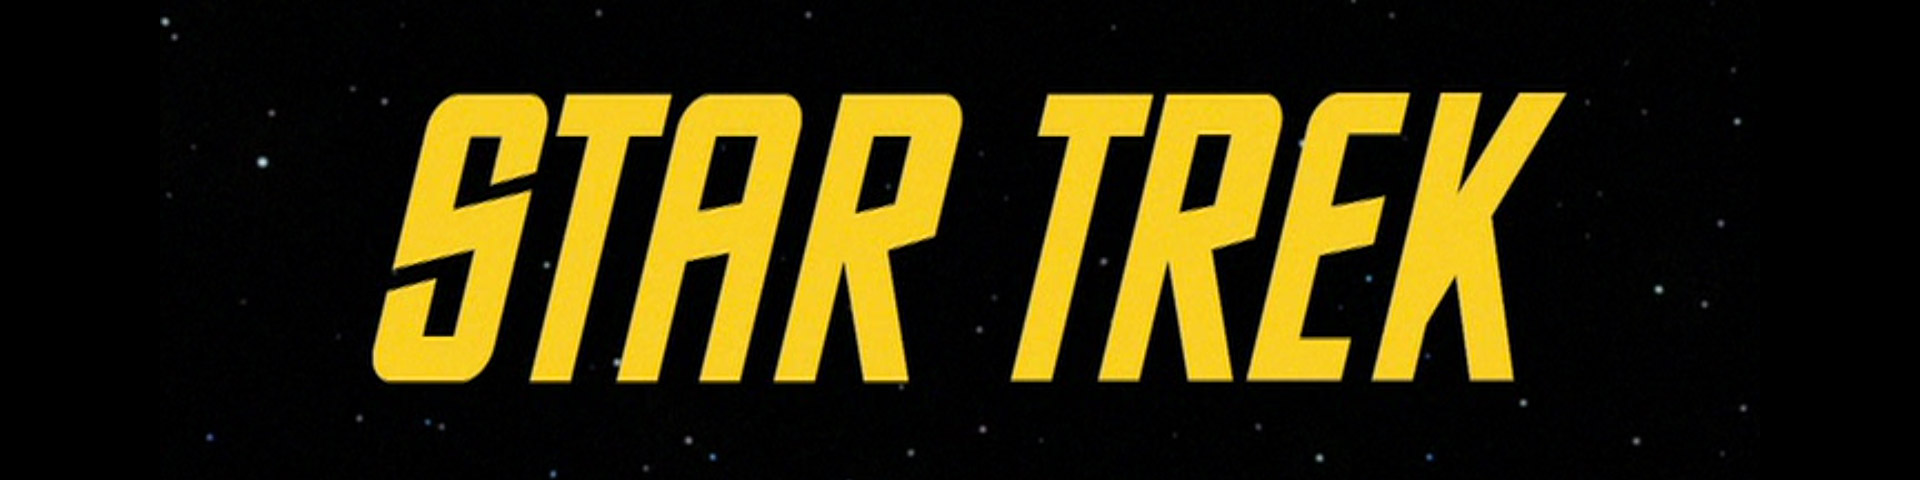 star trek title sequence